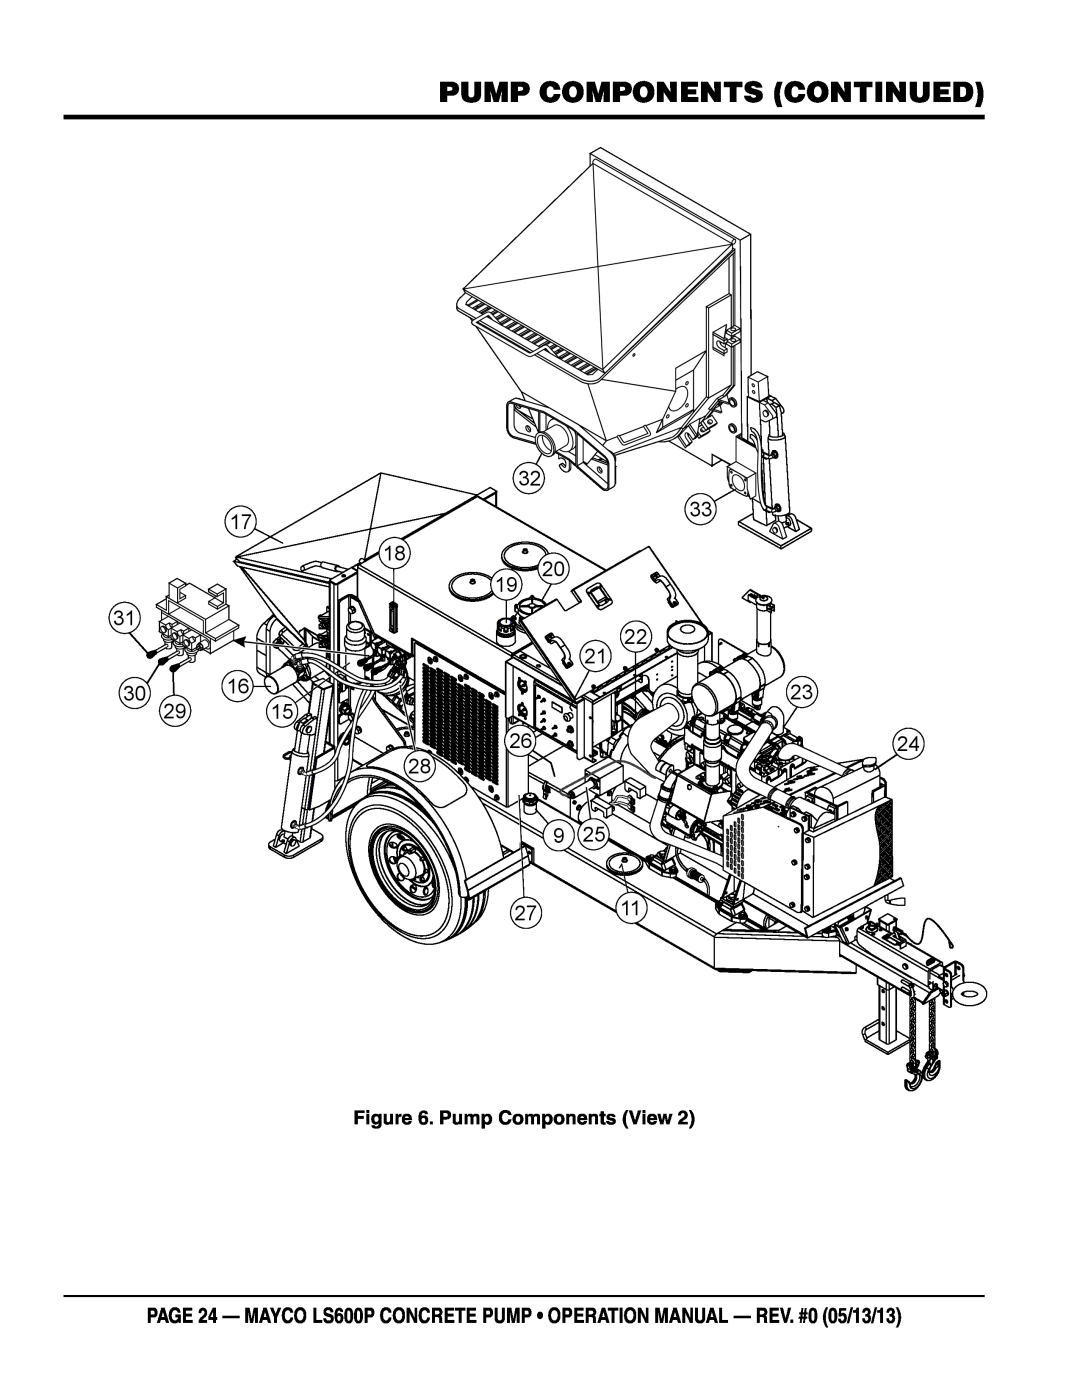 Multiquip LS600P operation manual pump components Continued, Pump Components View 